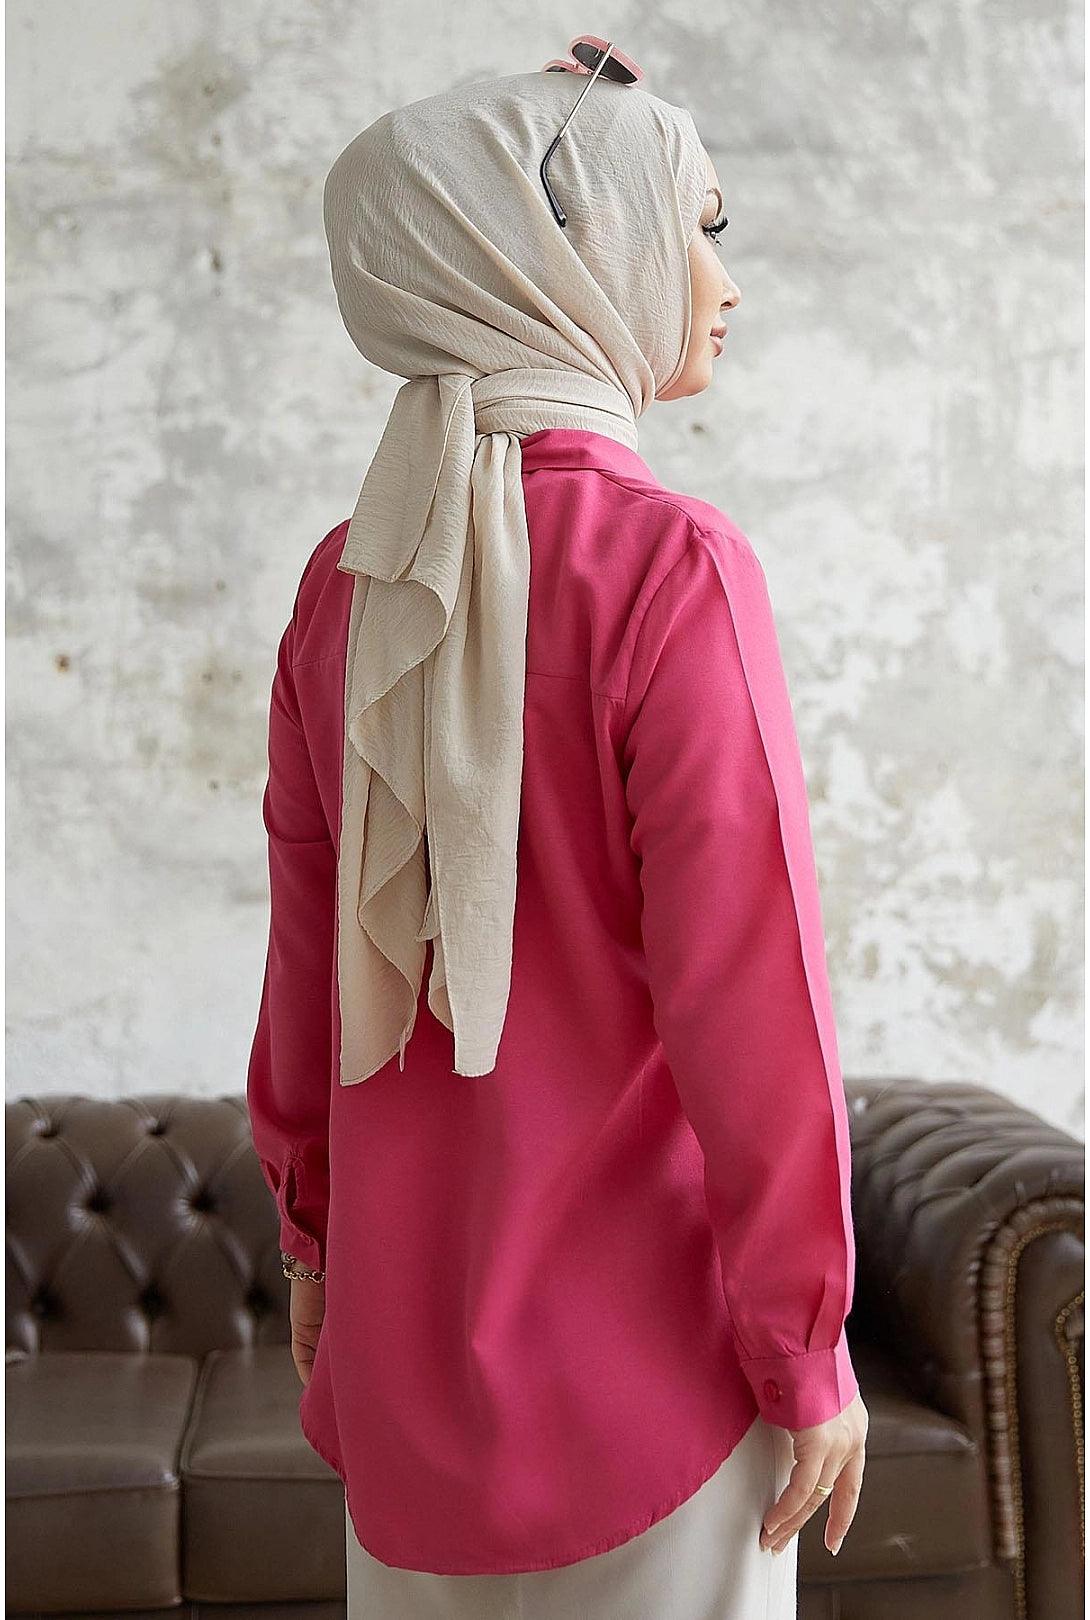 Womens Modest Long Sleeve Collar Shirt - Fuchsia Pink